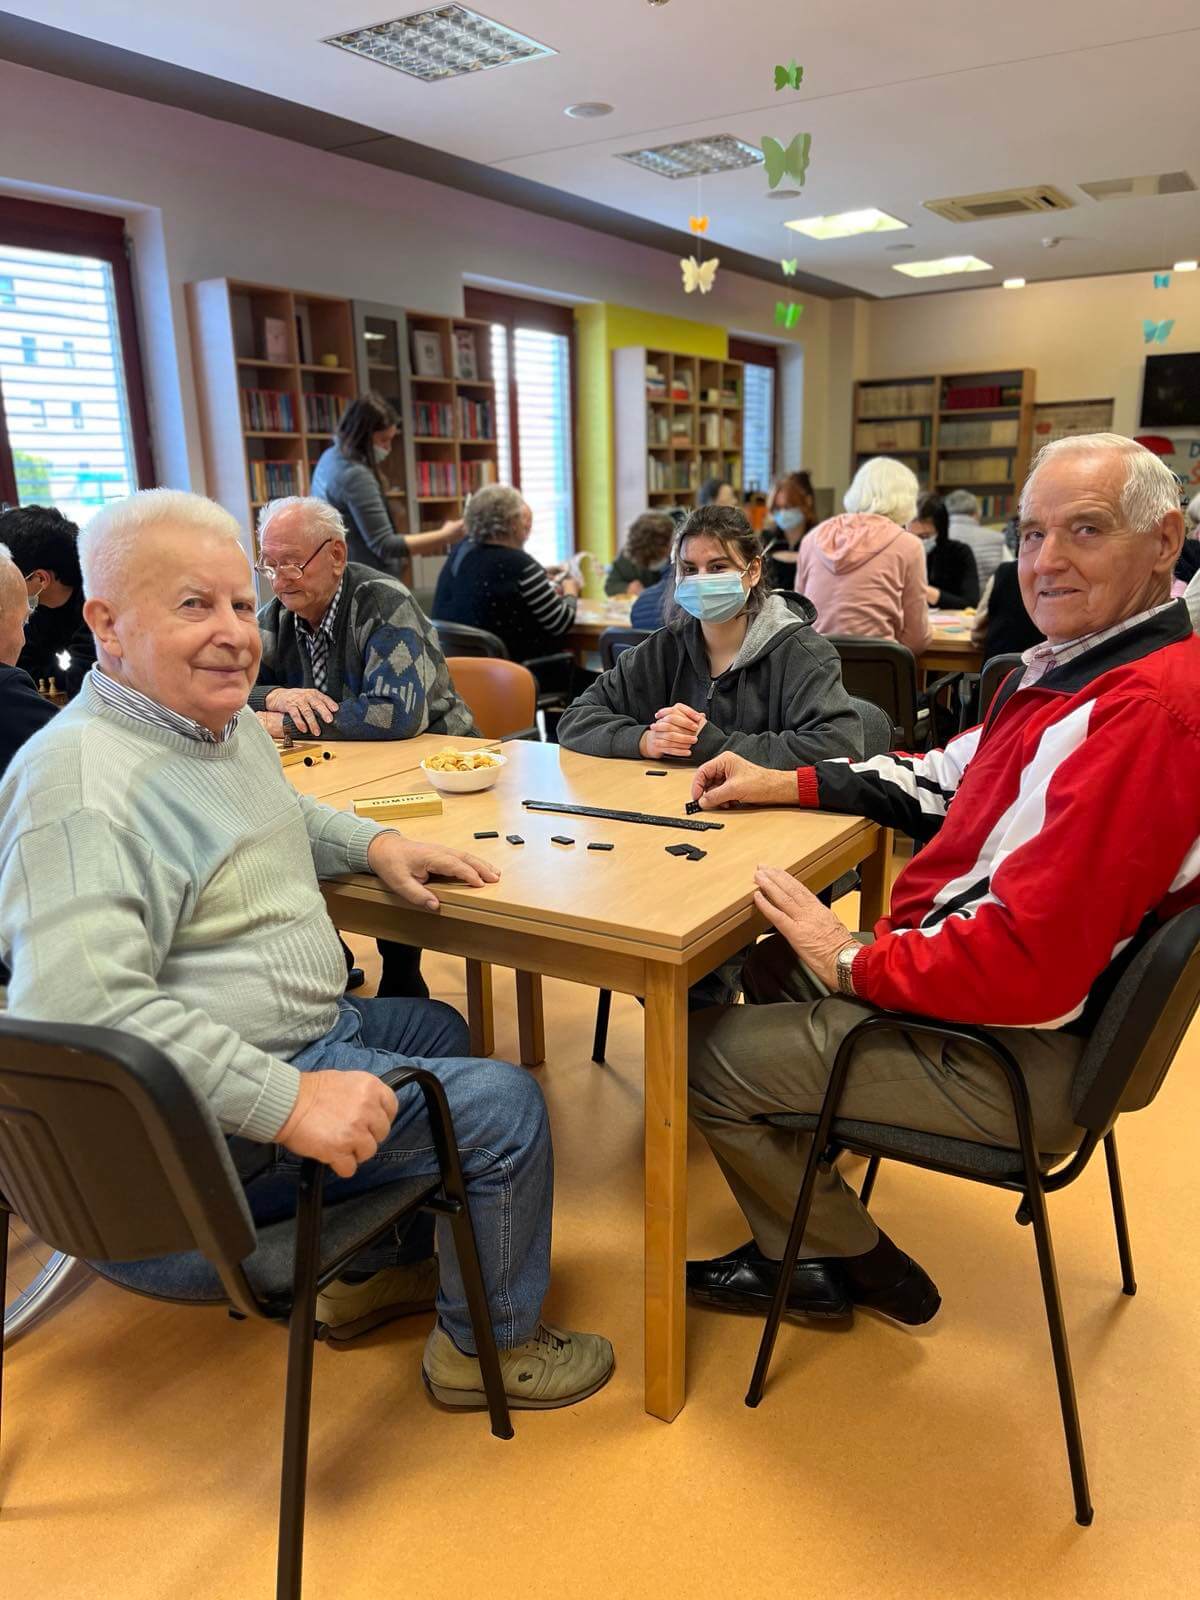 Umirovljenici i učenica igraju domino